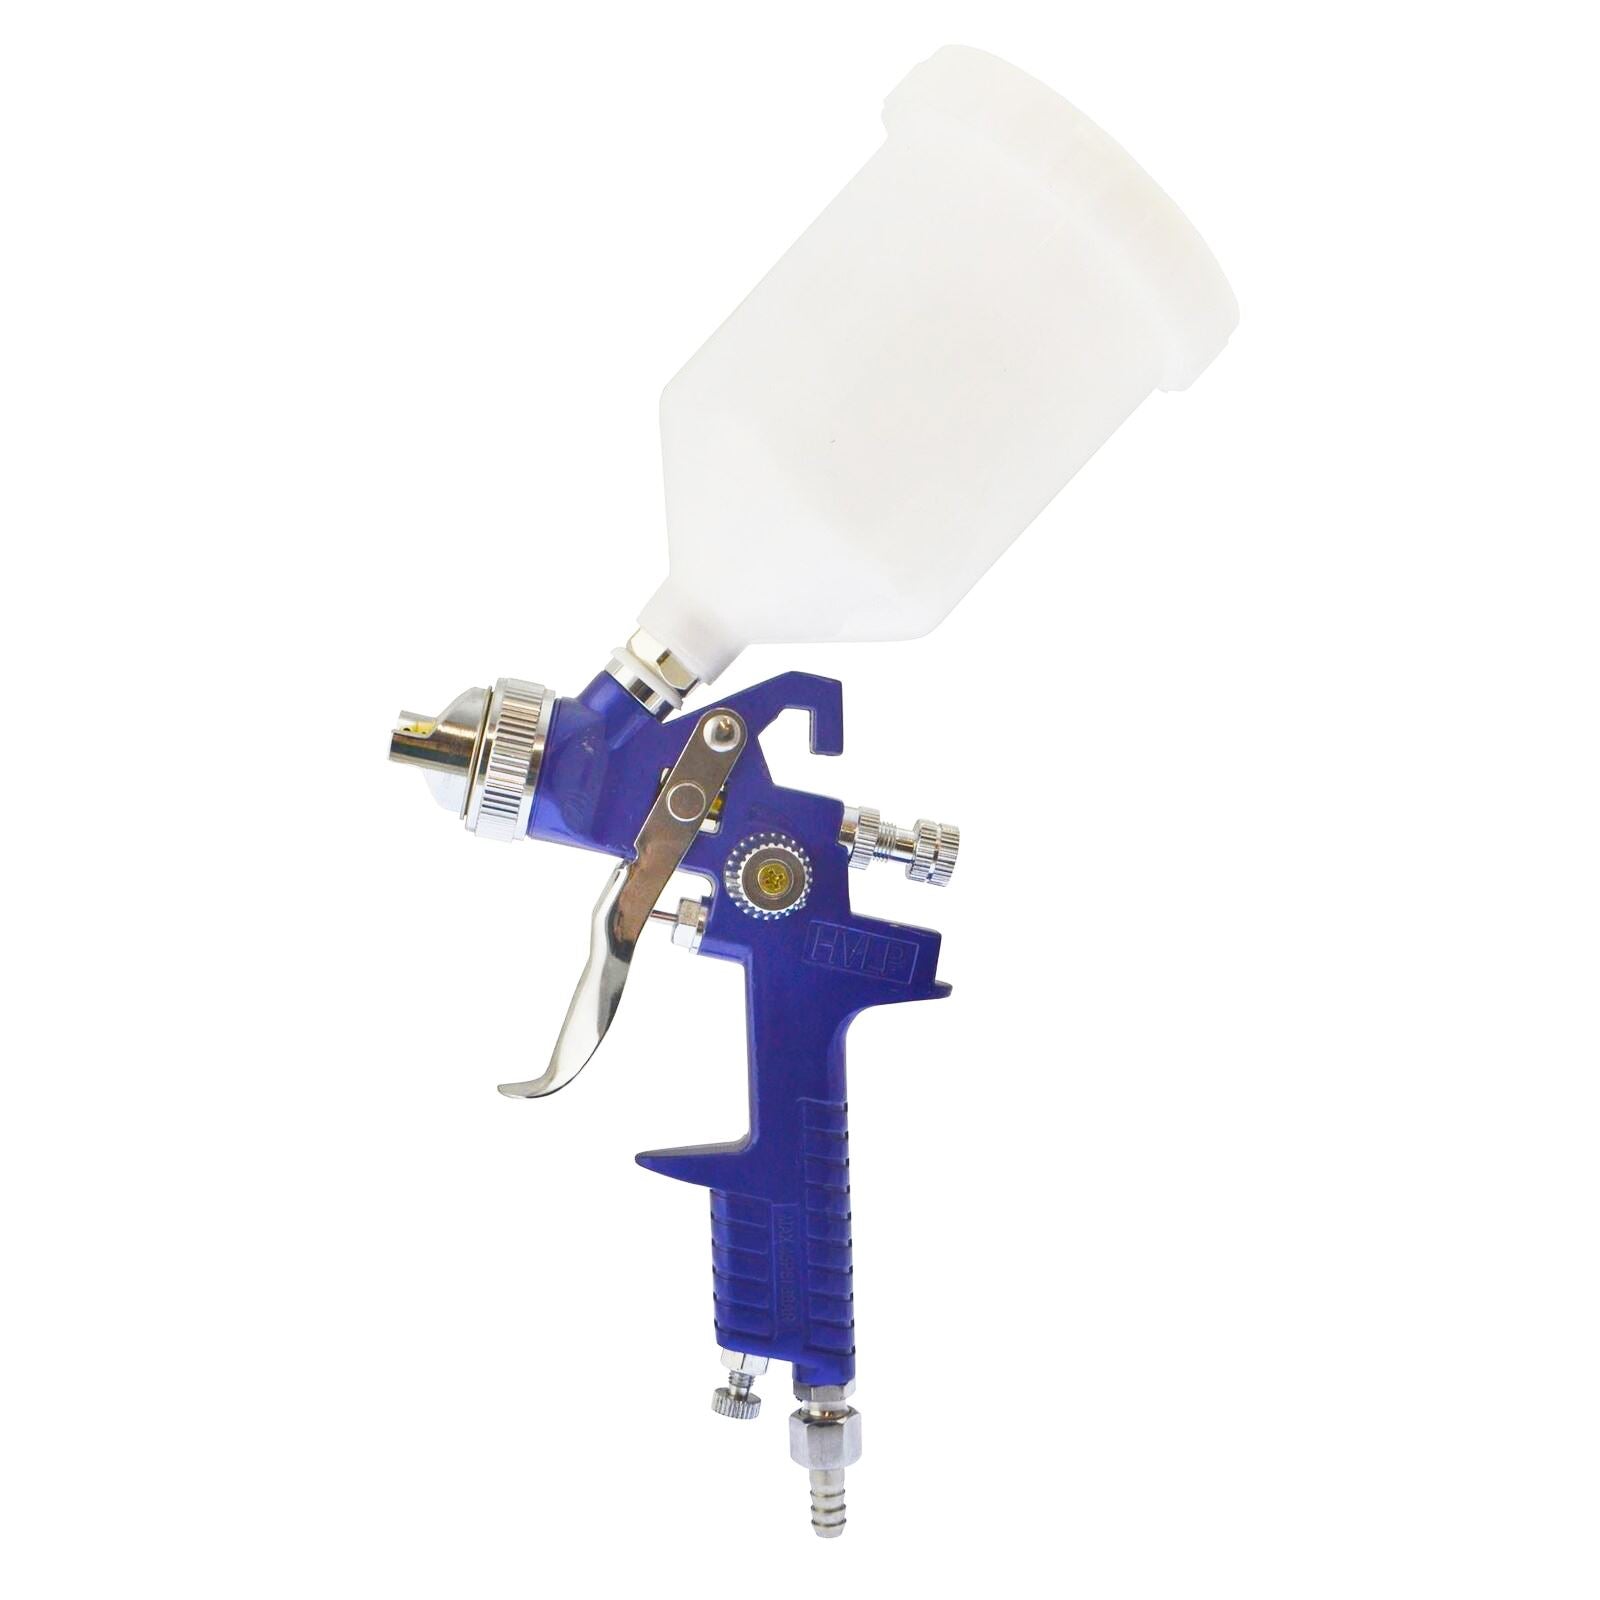 HVLP Gravity Feed Spray Gun 1.4mm & Inline Moisture Trap / Pressure Regulator